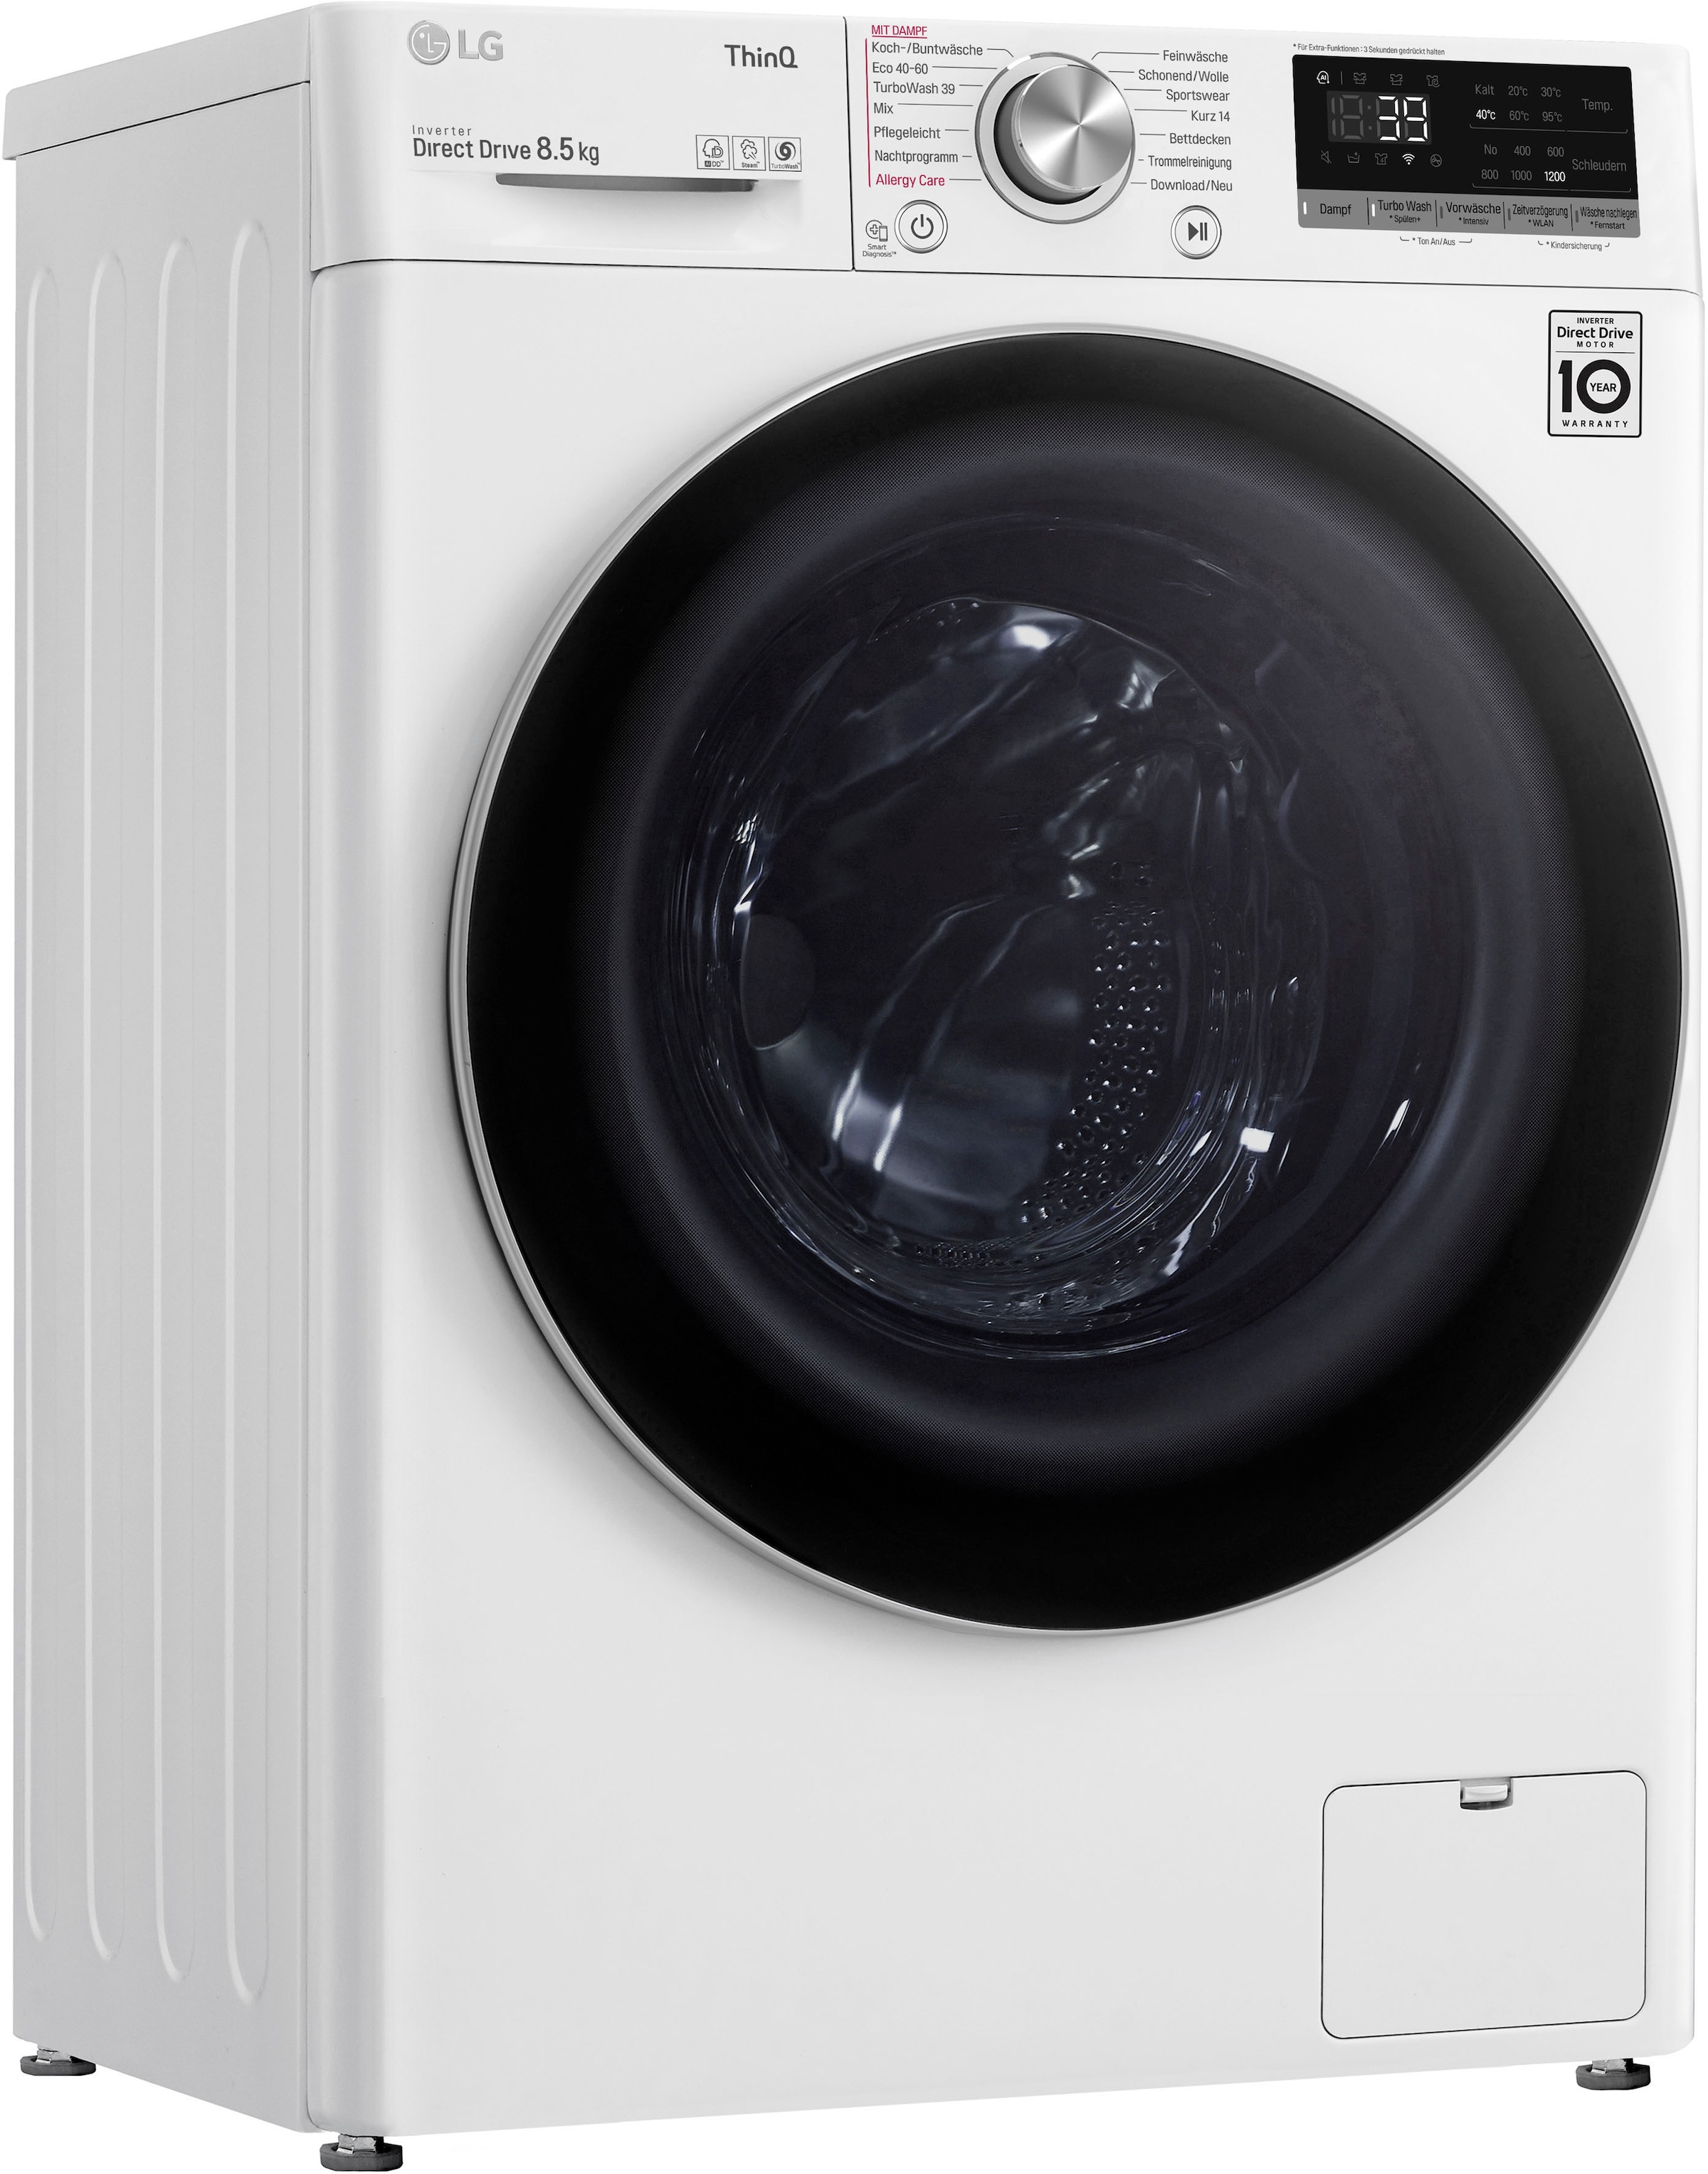 nur LG OTTO kaufen Minuten F2V7SLIM8E, - bei 1200 8,5 kg, Waschmaschine in Waschen 39 »F2V7SLIM8E«, U/min, TurboWash®